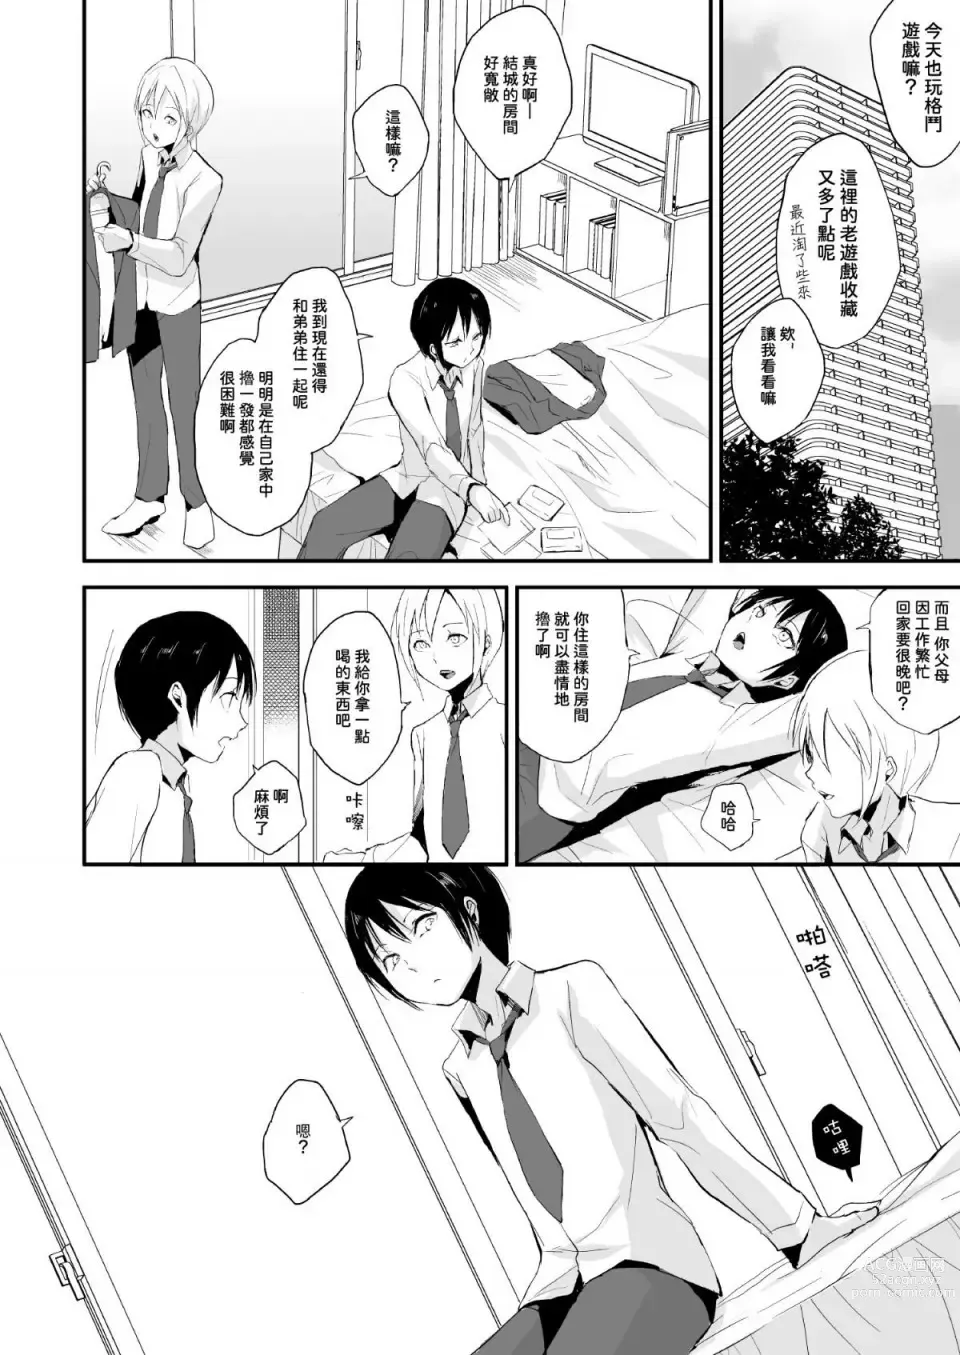 Page 3 of doujinshi Izumi-kun to Yuuki-kun 1+2